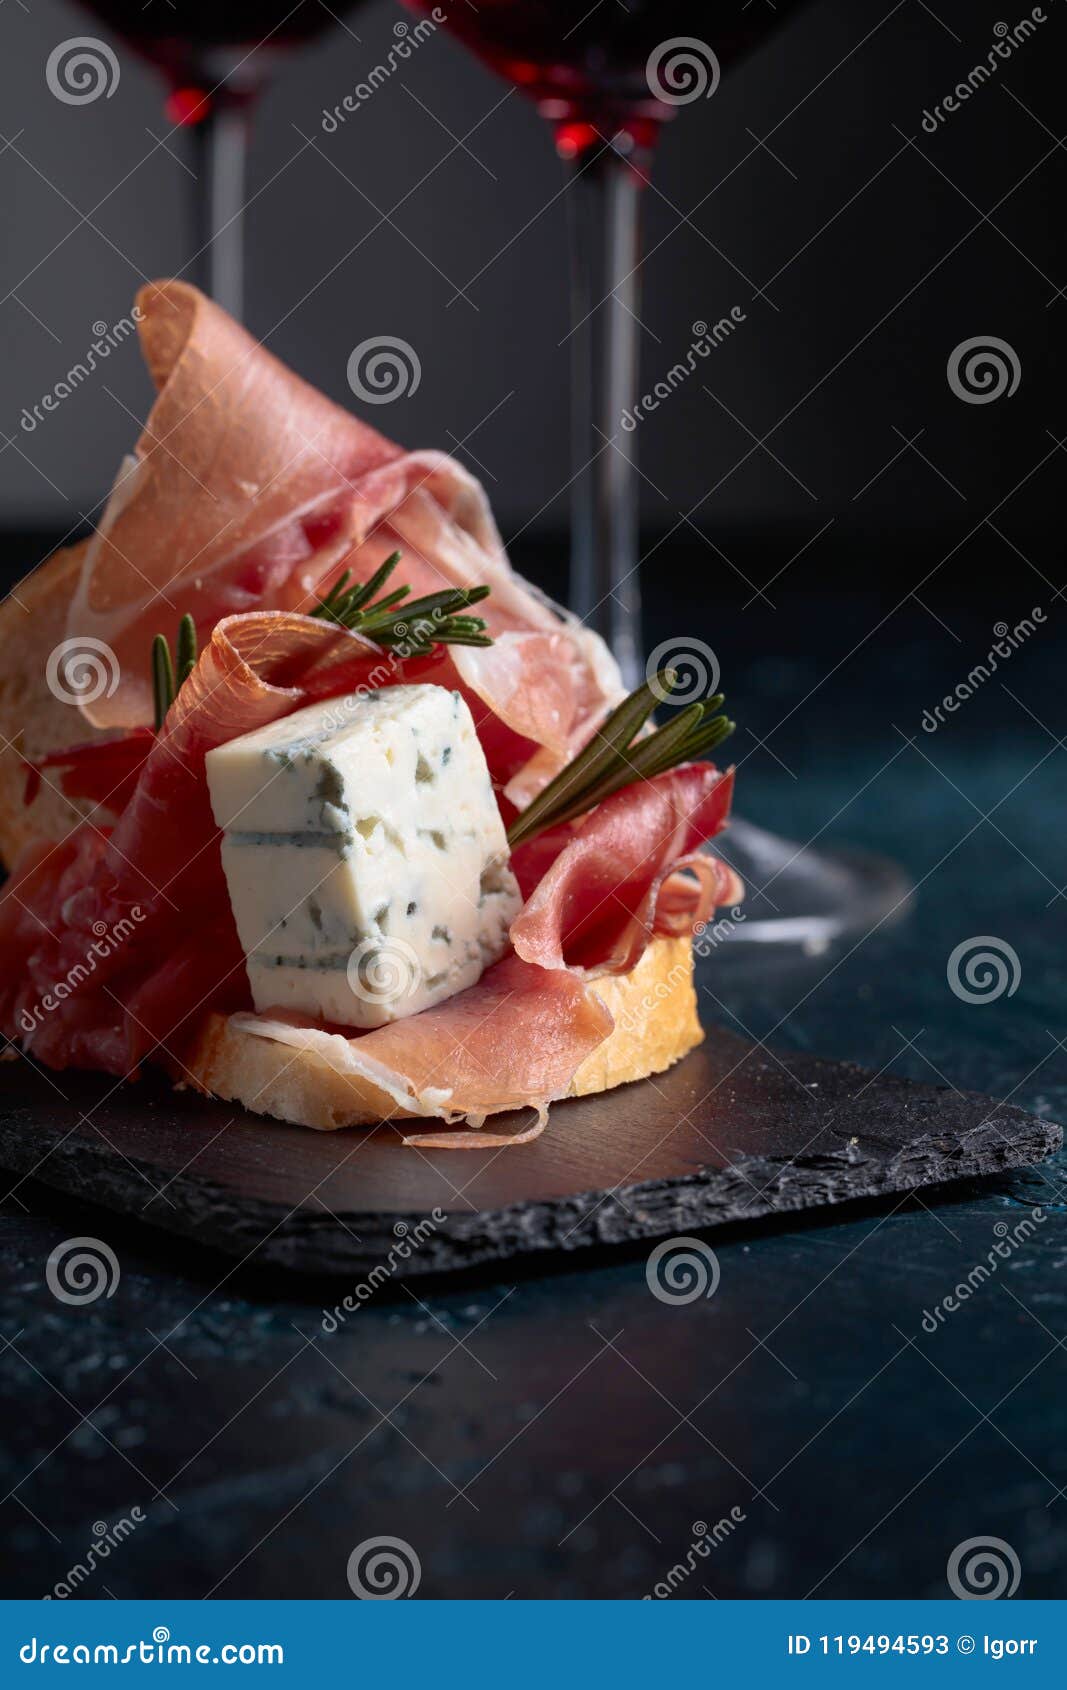 Sandwich Mit Prosciutto, Blauschimmelkäse Und Rosmarin Stockbild - Bild ...